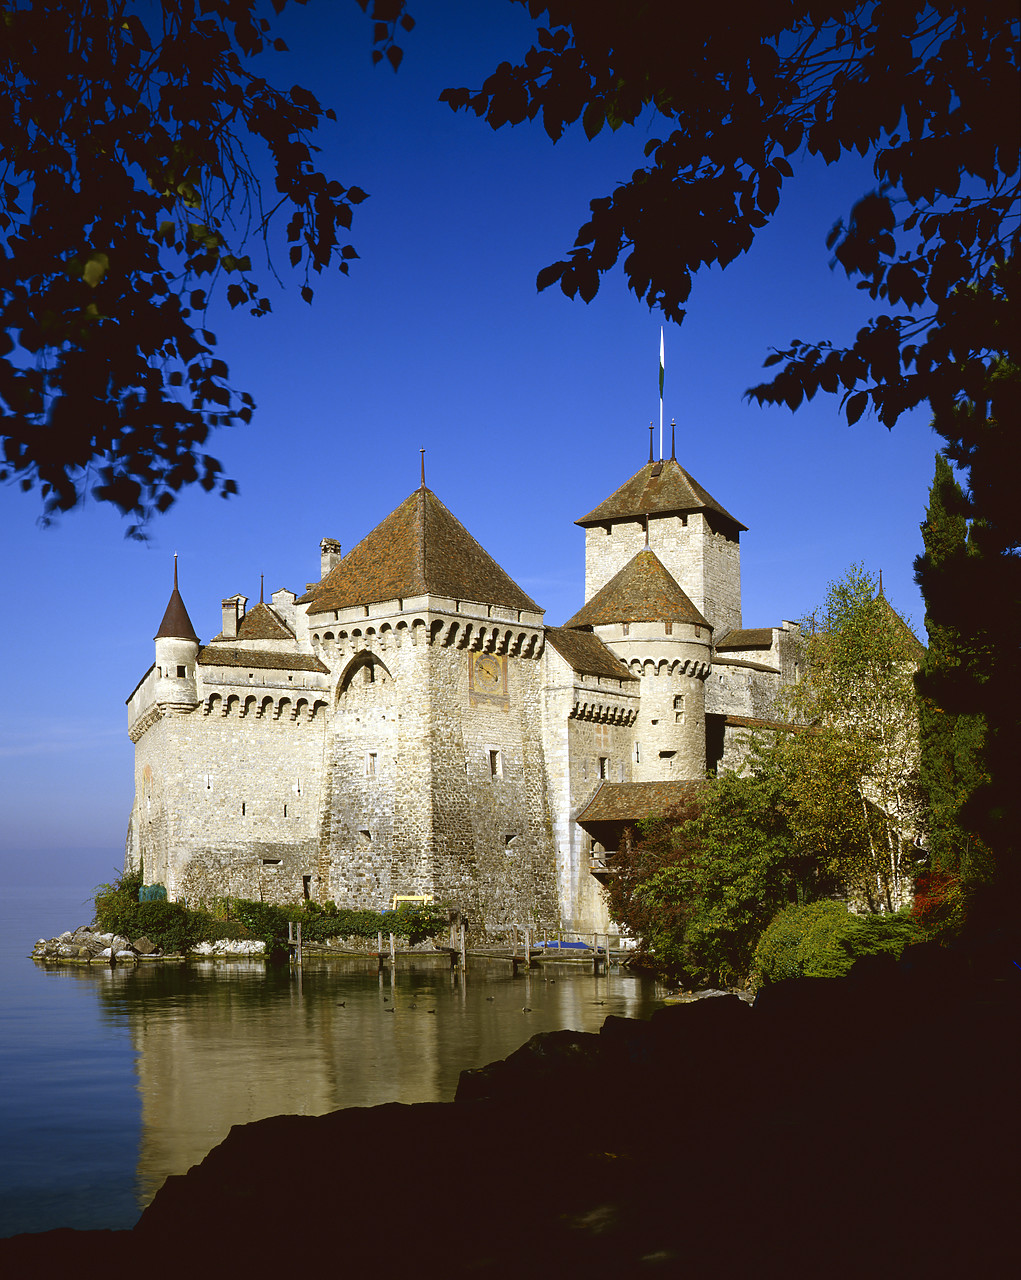 #85556 - Chateau de Chillon, Montreau, Switzerland